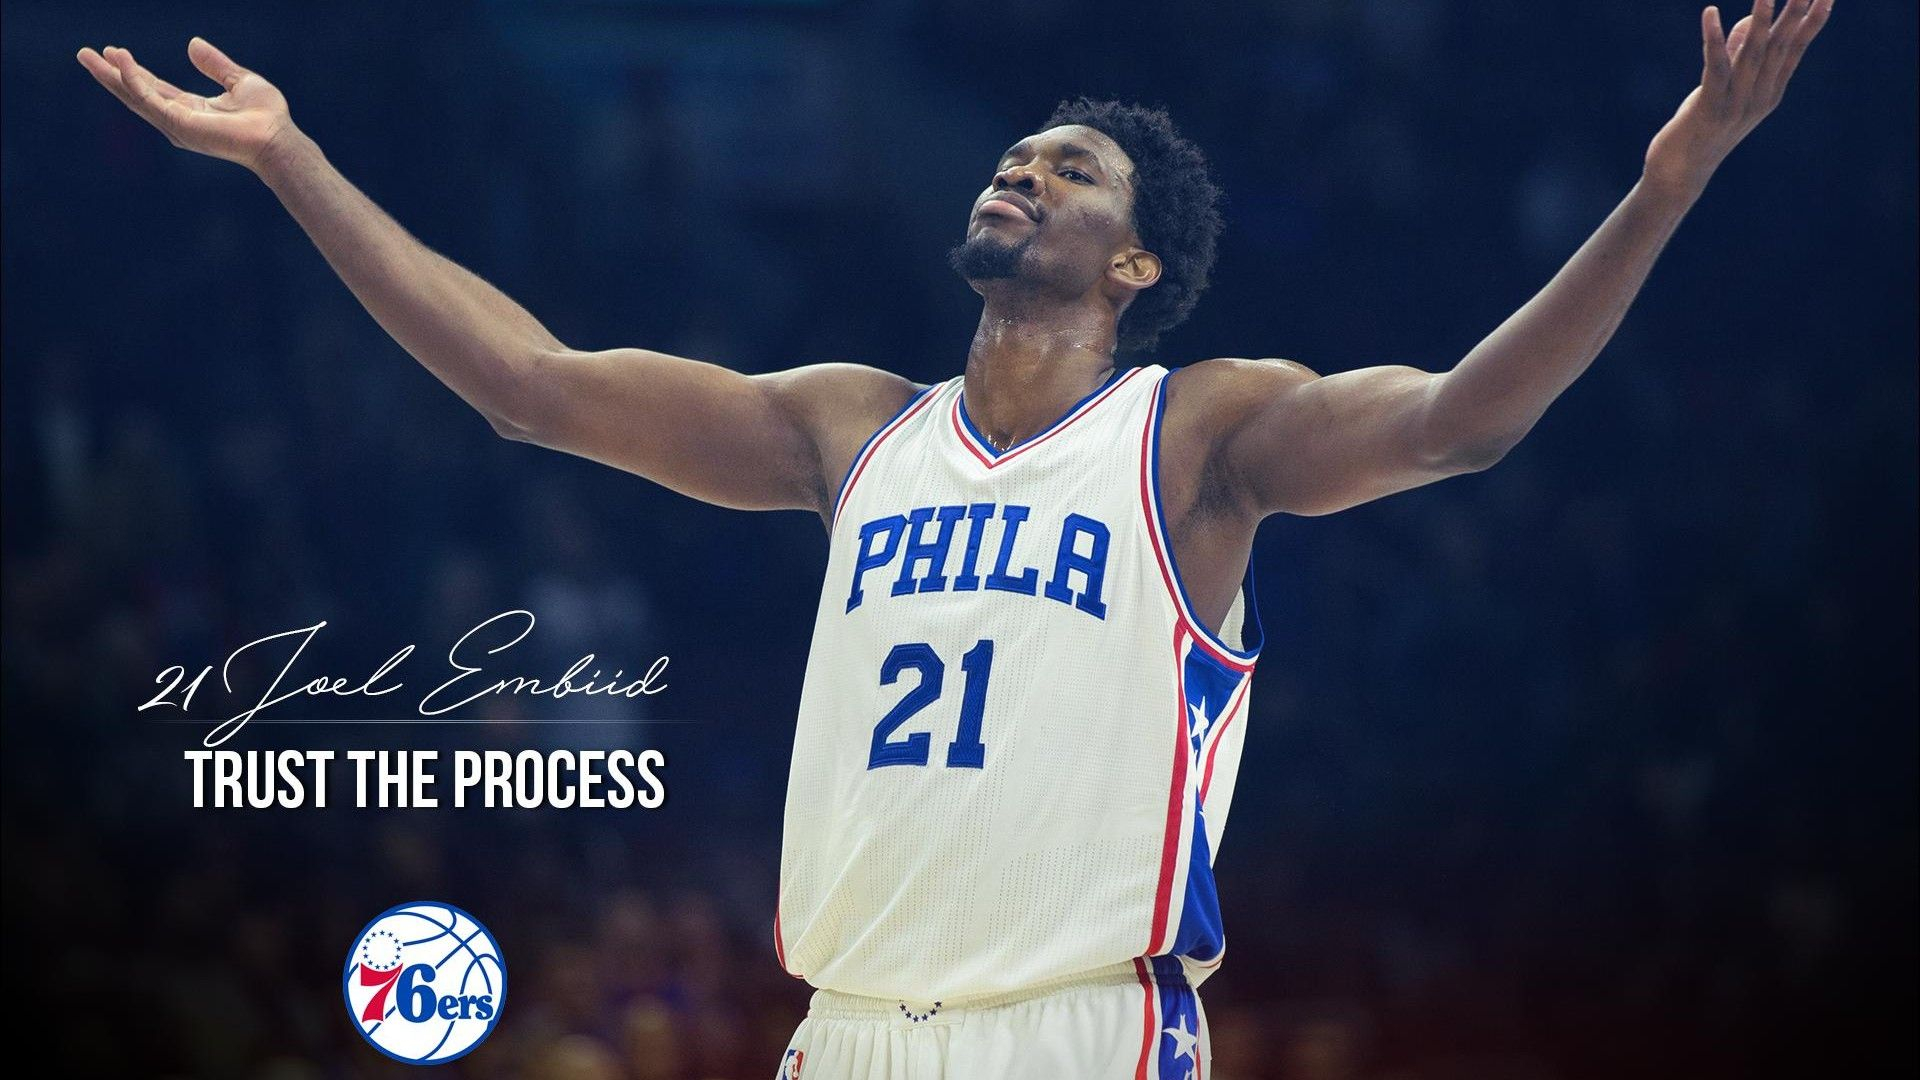 1920x1080 HD Backgrounds Philadelphia 76ers NBA 2022 Basketball Wallpaper | 76ers, Basketball star, Philadelphia 76ers